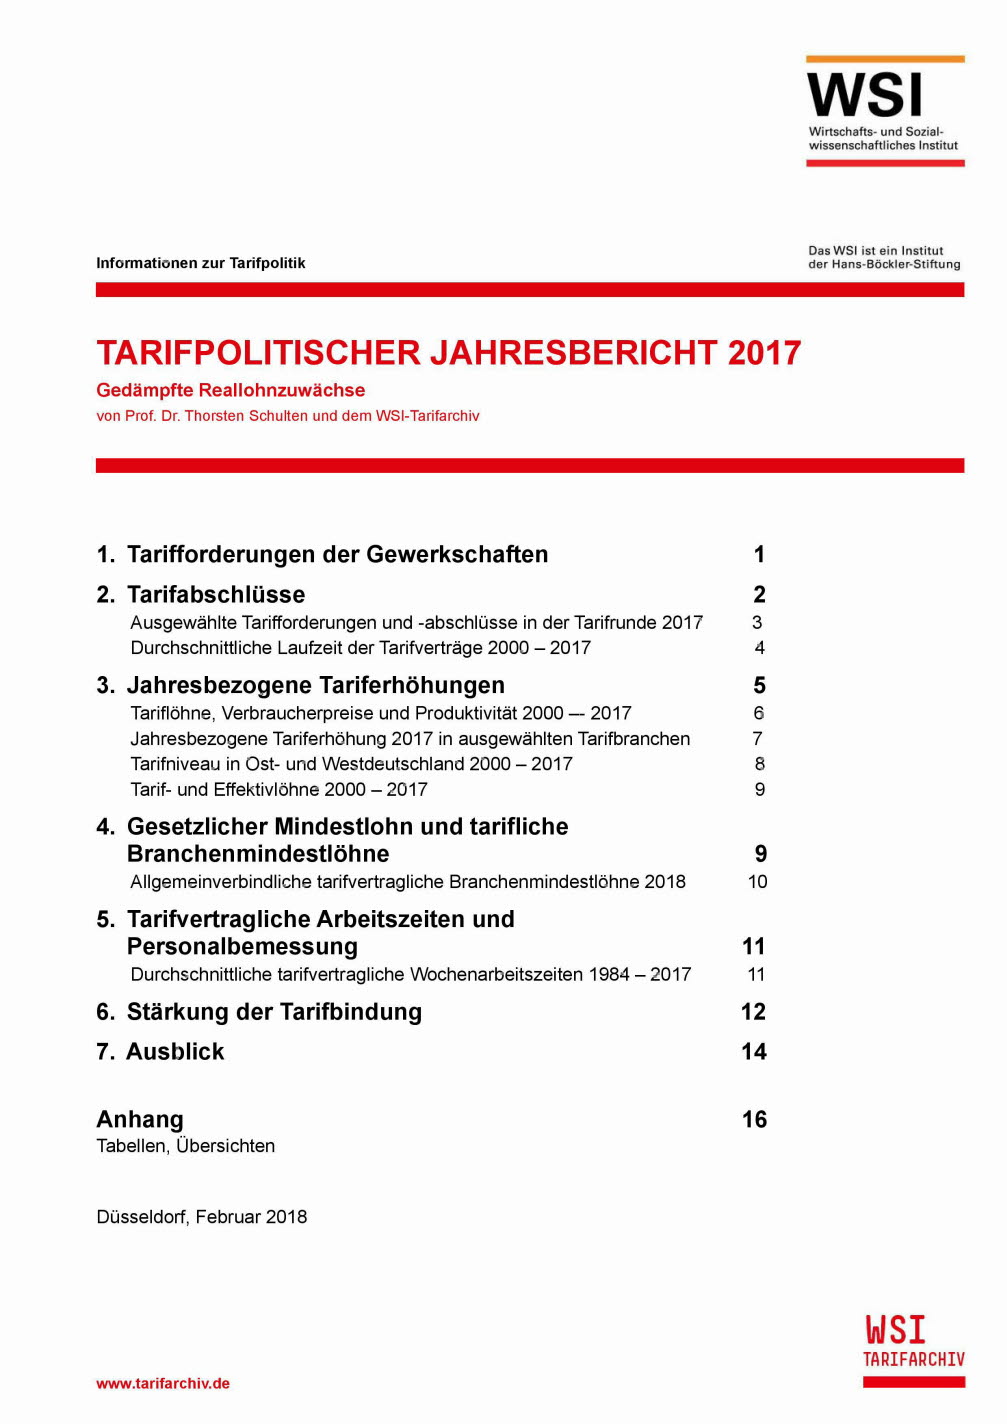 Tarifpolitischer Jahresbericht 2017